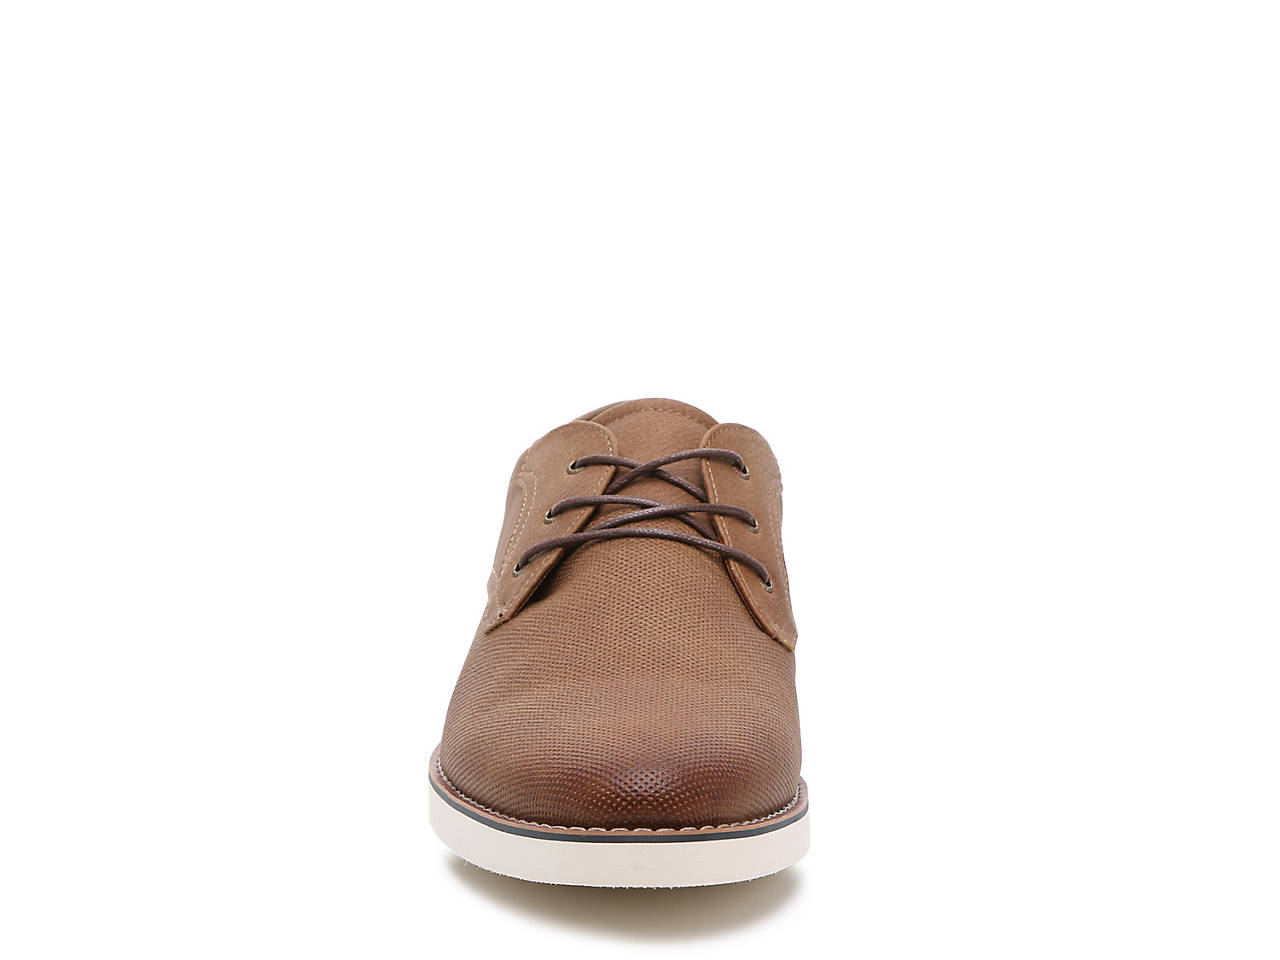 Seven 91 Benadair Oxford Men's Shoes | DSW